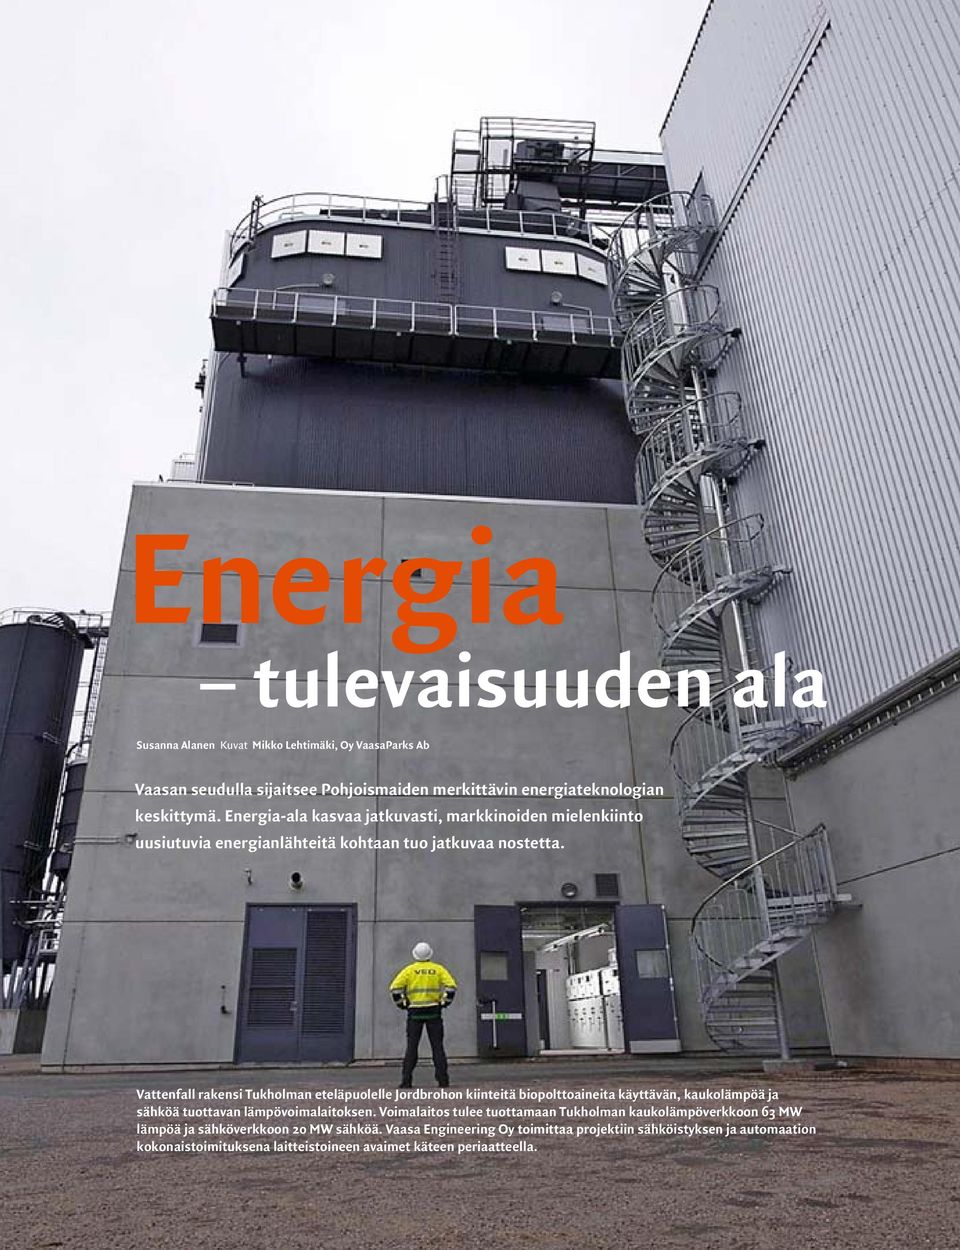 Vattenfall rakensi Tukholman eteläpuolelle Jordbrohon kiinteitä biopolttoaineita käyttävän, kaukolämpöä ja sähköä tuottavan lämpövoimalaitoksen.